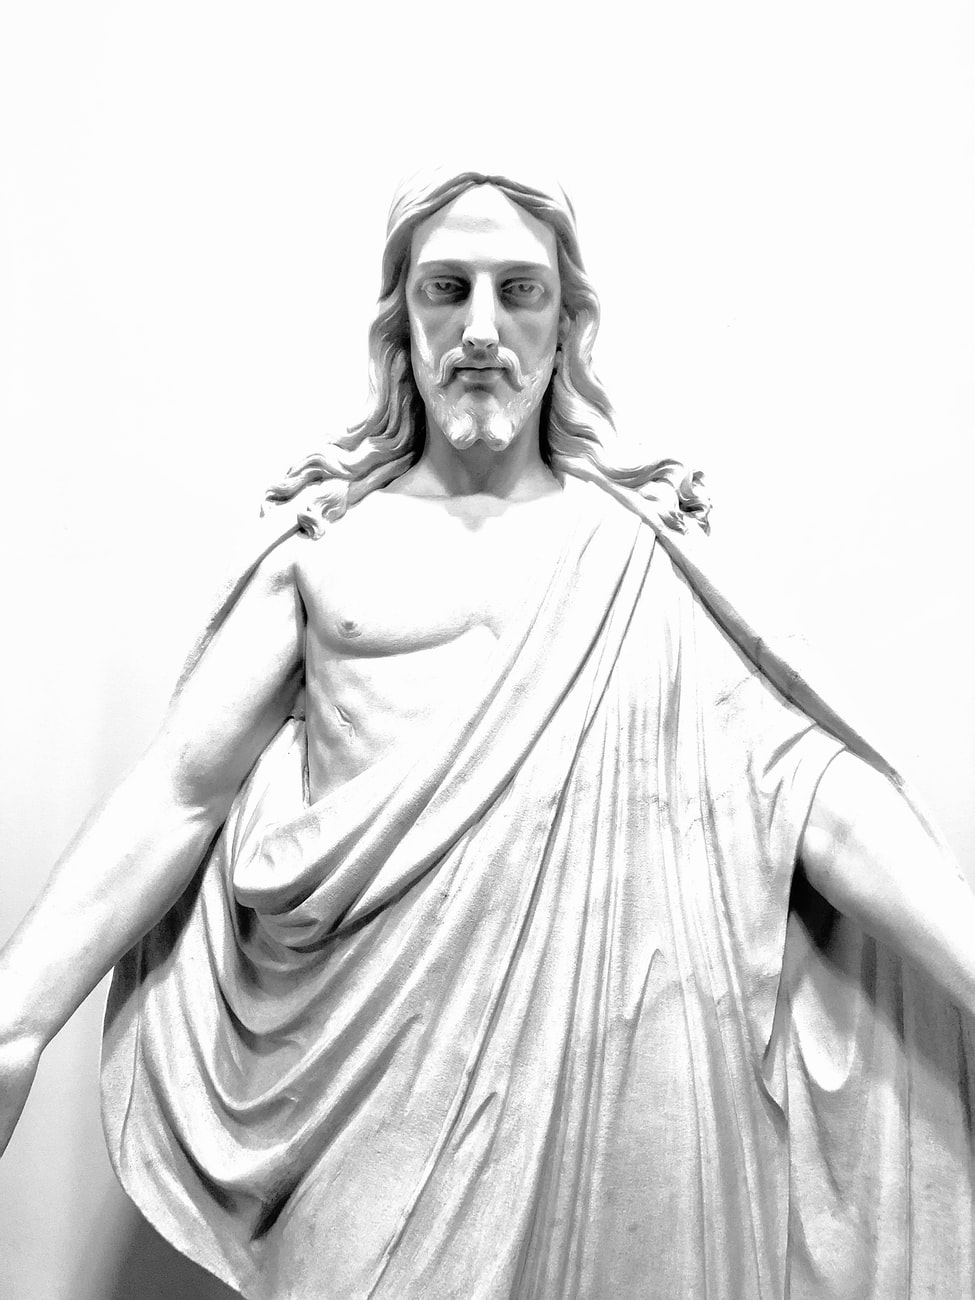 Statue Jesus